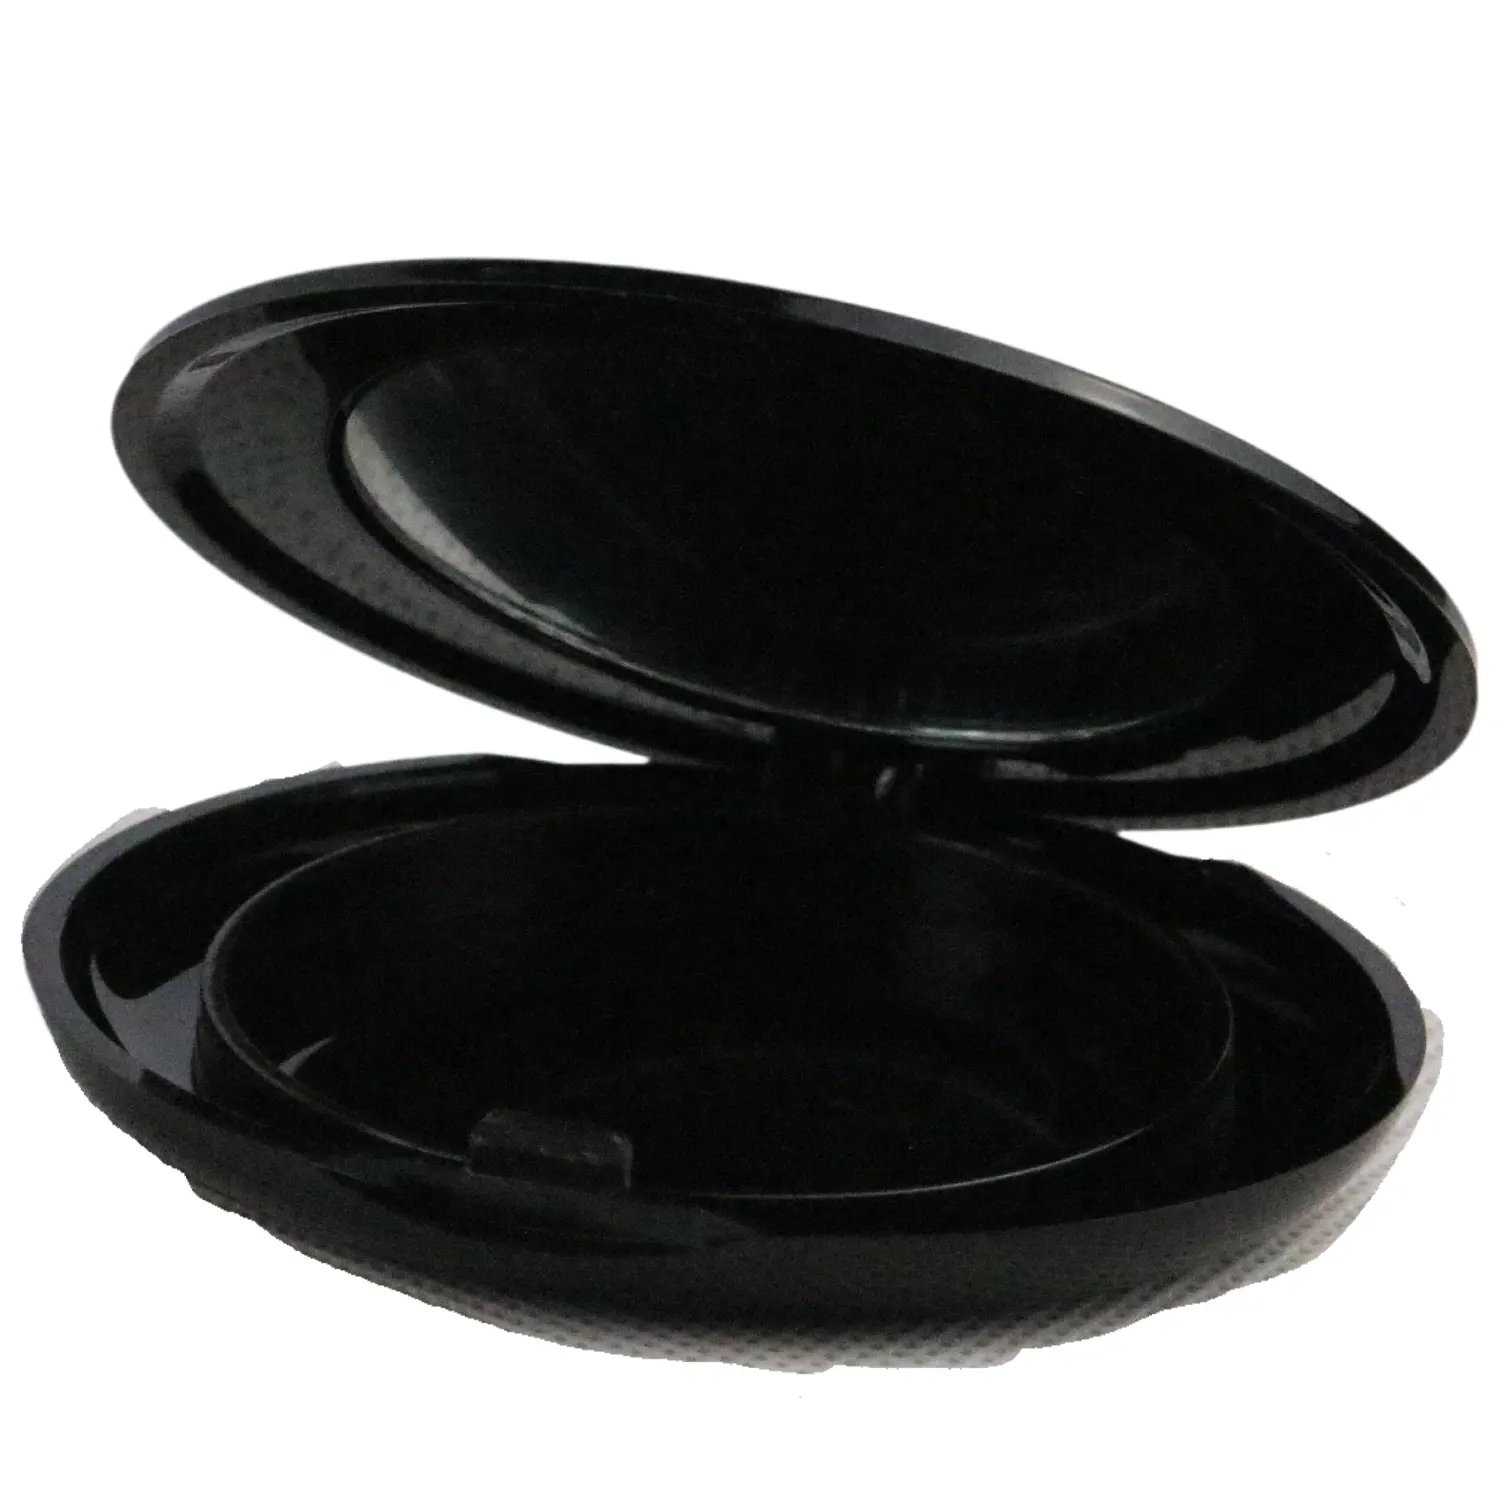 मिरर के साथ ब्लैक कैप कॉम्पैक्ट पाउडर केस मेकअप केस मिरर कॉस्मेटिक कार्टन पैकेजिंग के साथ उच्च गुणवत्ता वाला आईशैडो केस स्वीकार करें